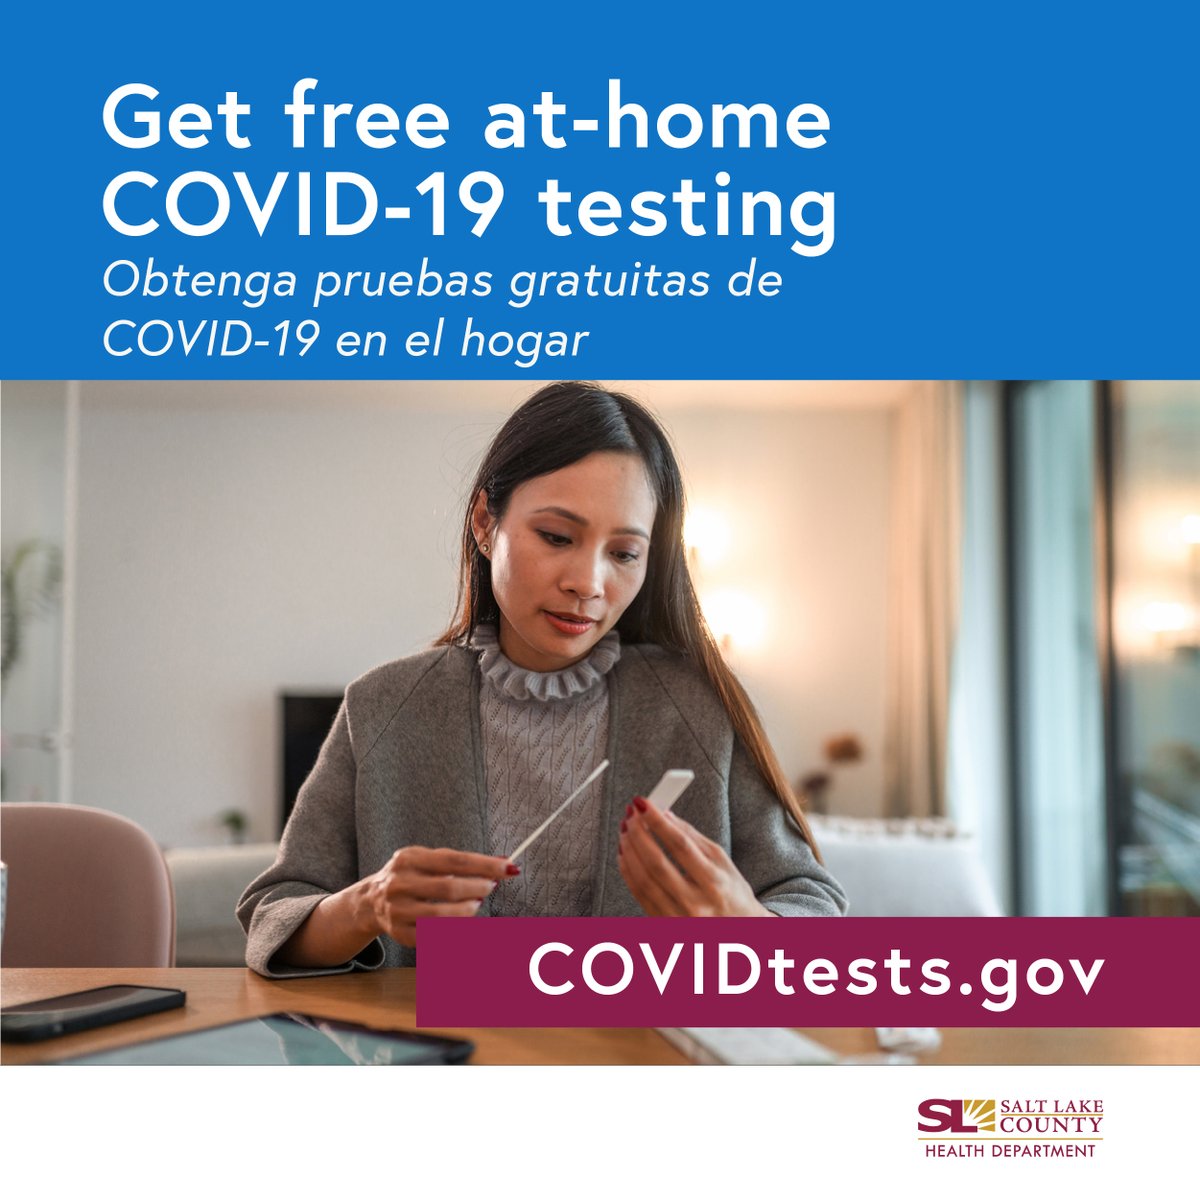 #DYK that every home in the U.S. can now order 4 free at-⁠home COVID-⁠19 tests? Go to COVIDtests.gov to get yours! ¿Sabía que cada hogar en los EE.UU. ahora pueden solicitar 4 pruebas gratis de COVID-⁠19 en el hogar? ¡Vaya a COVIDtests.gov/es para obtenerlos!